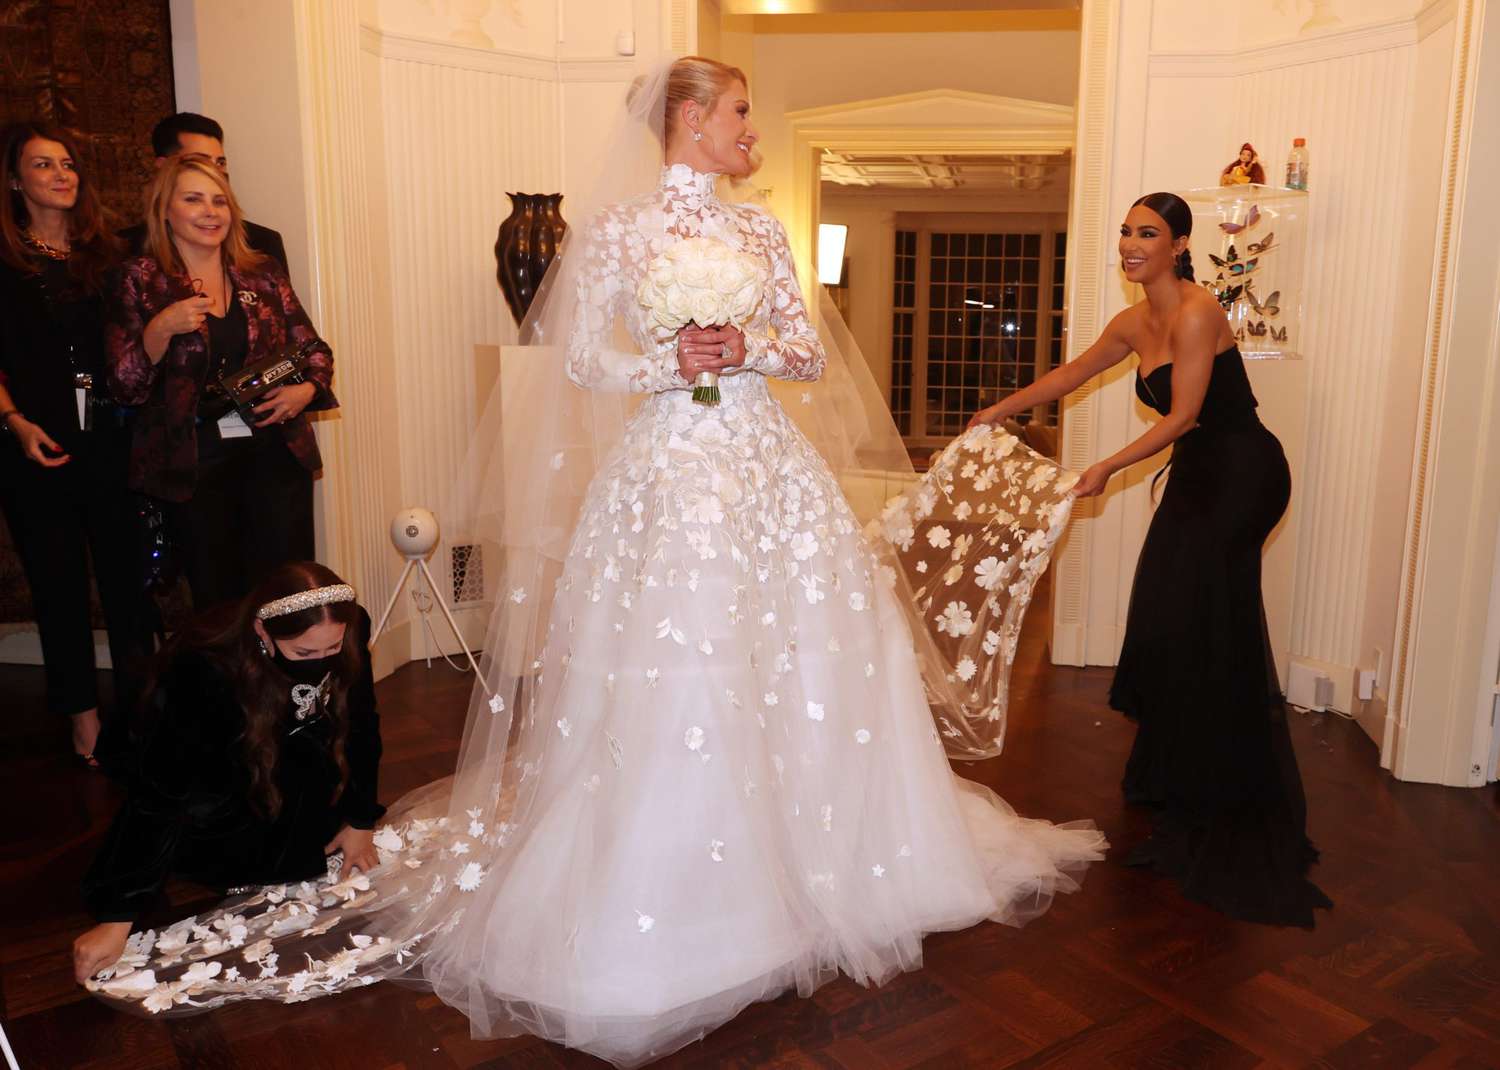 The wedding of Paris Hilton and Carter Reum, Bel Air, Los Angeles, California, USA - 11 Nov 2021